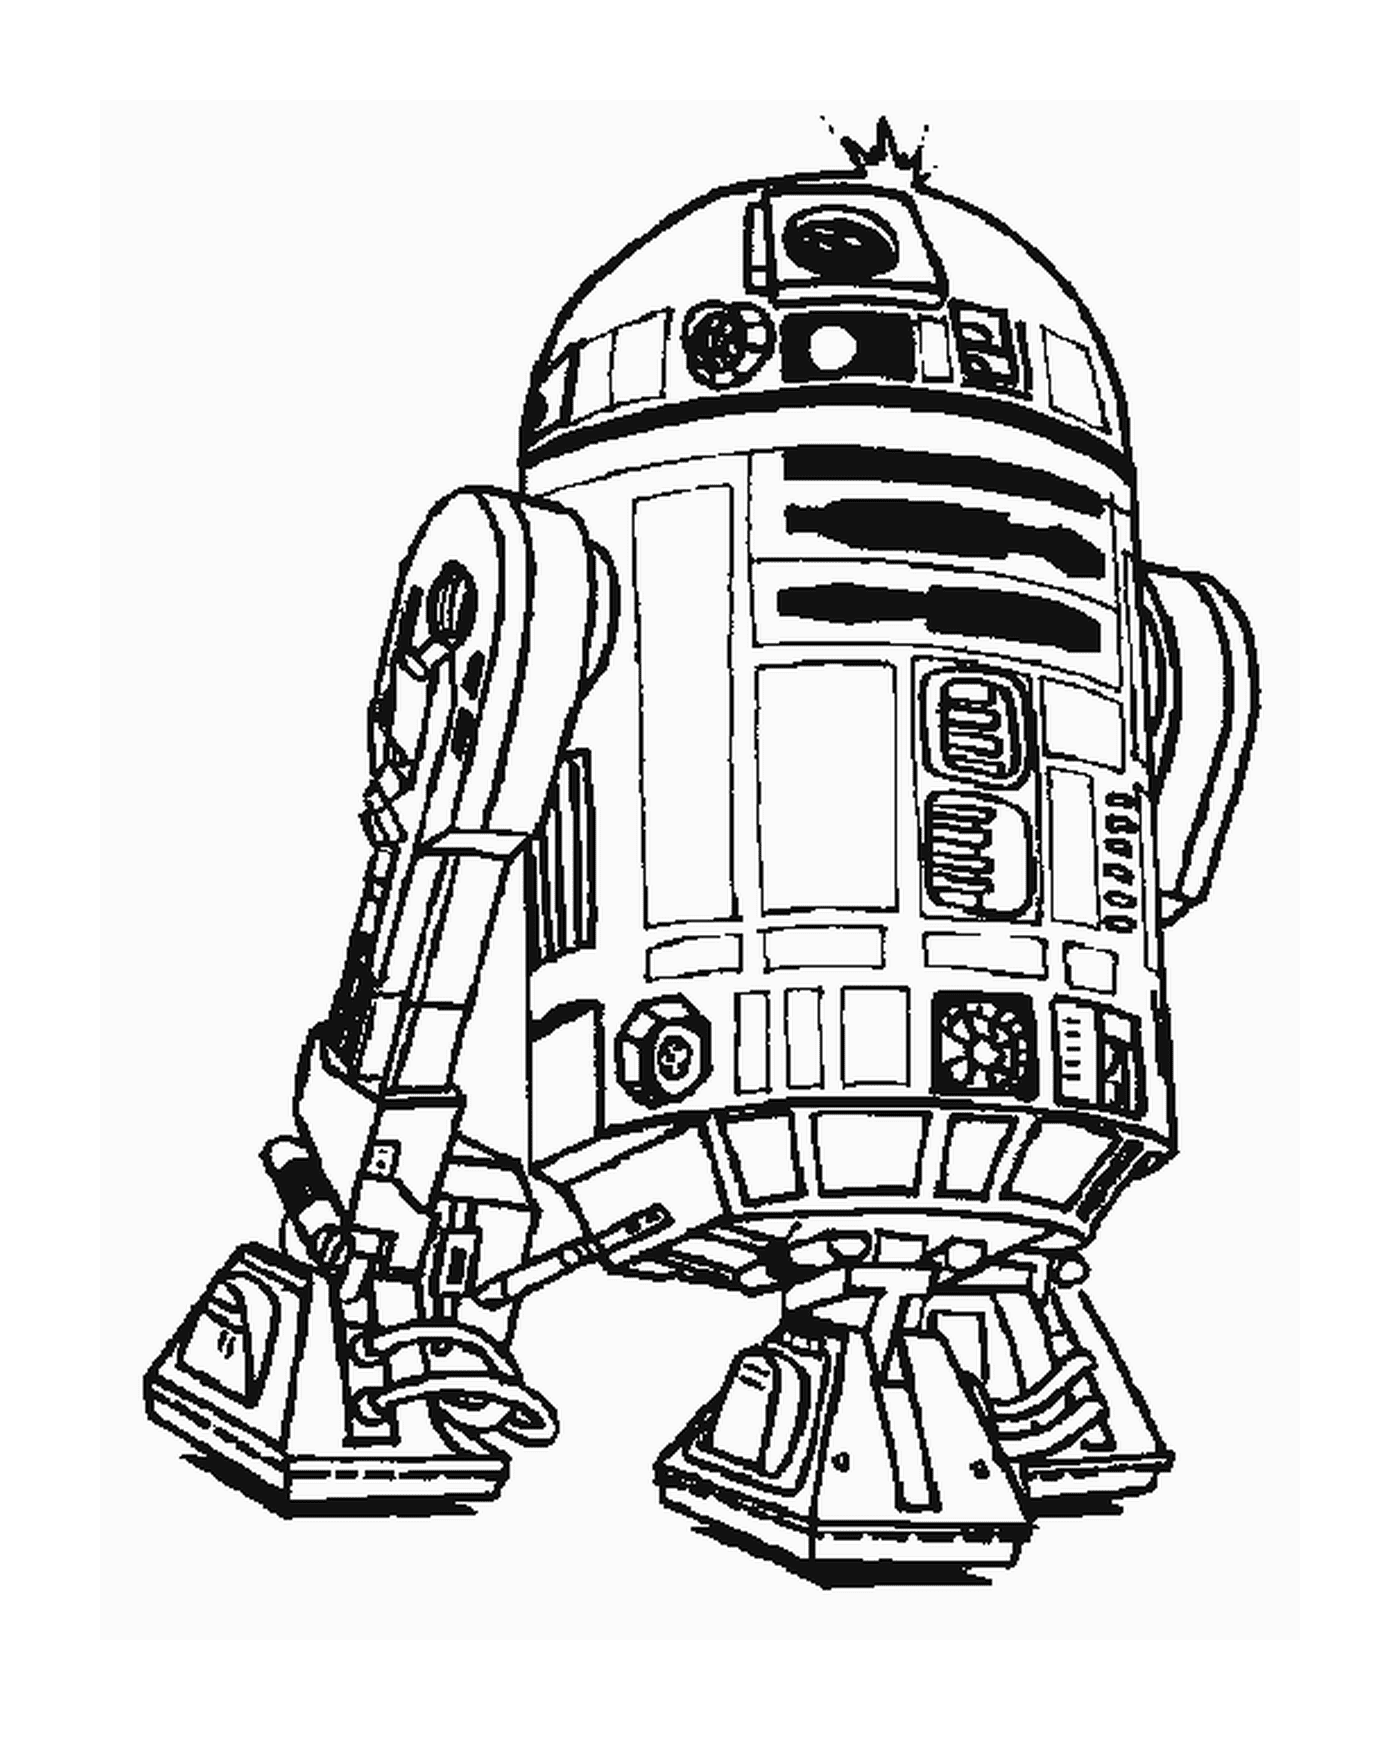  Desenho de um robô R2-D2 